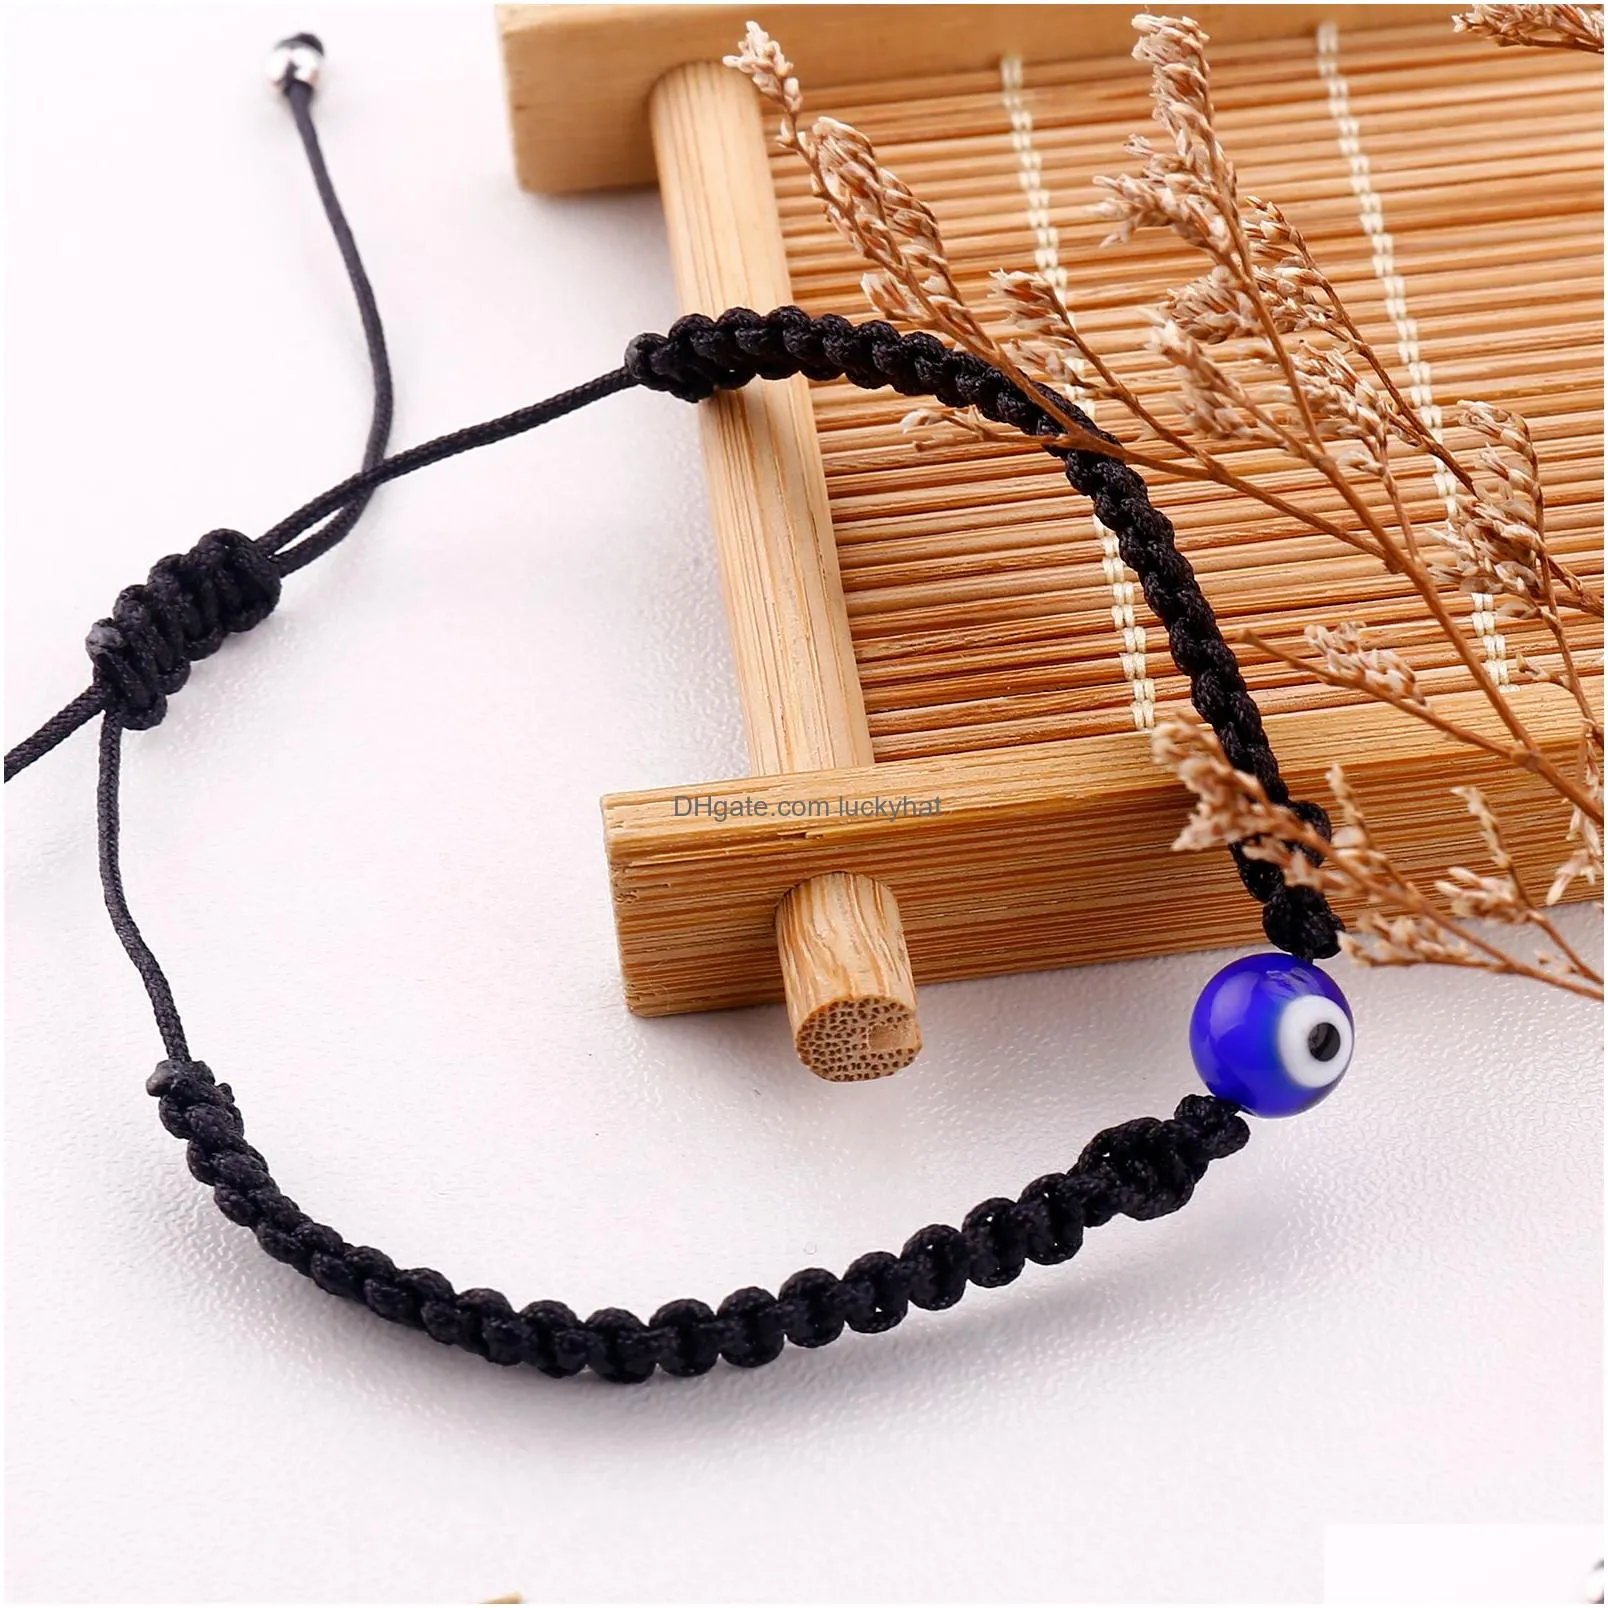 lucky eye turkish evil blue eye bracelets for women men handmade braided rope chain red bracelet female